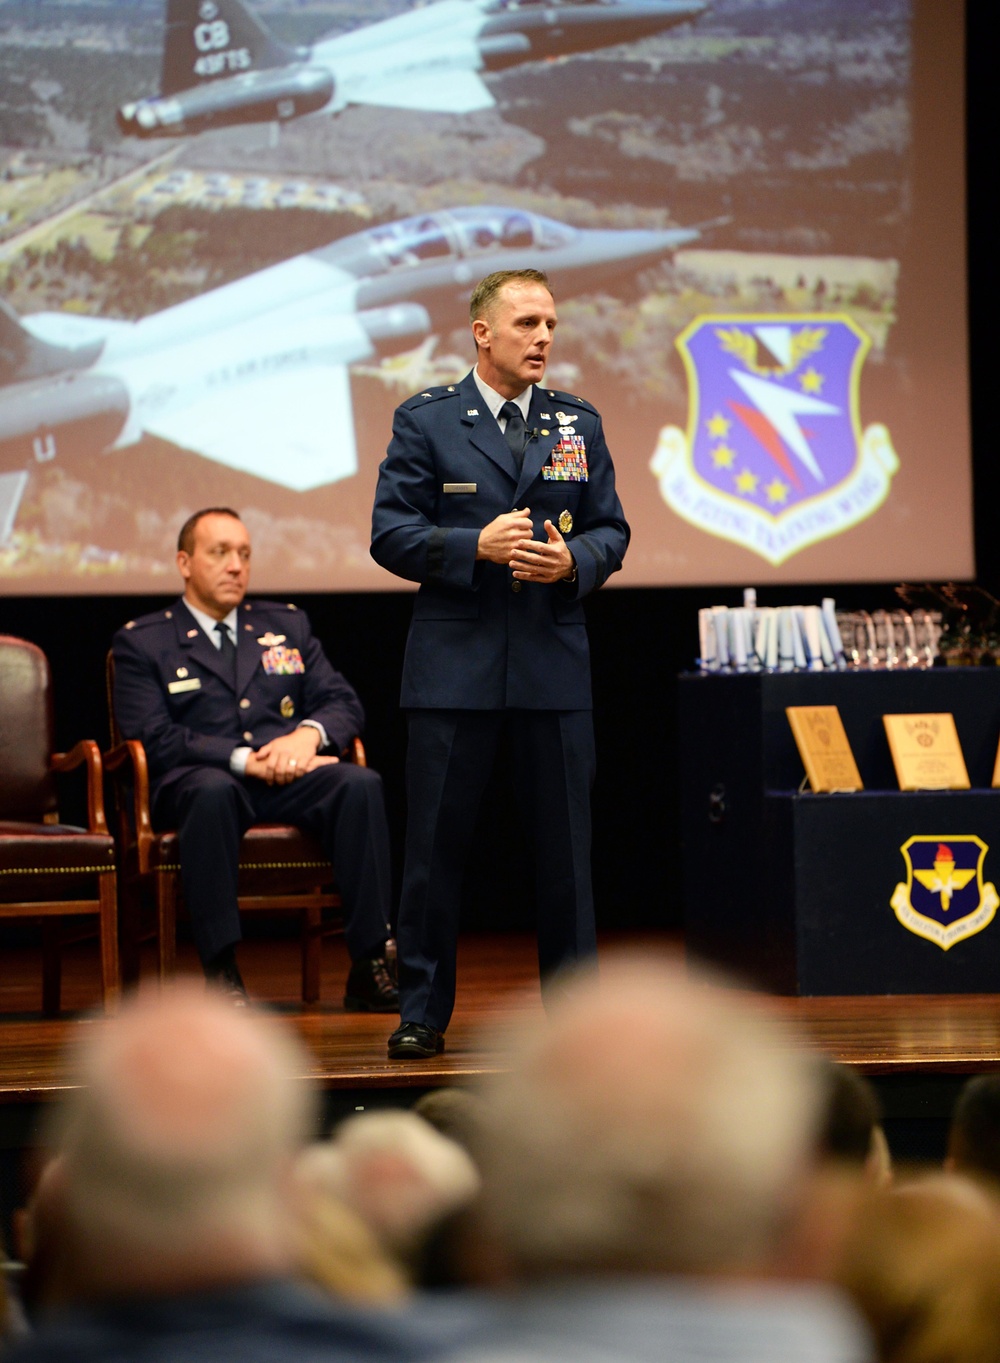 Retired brigadier general encourages SUPT Class 19-17/18 graduates